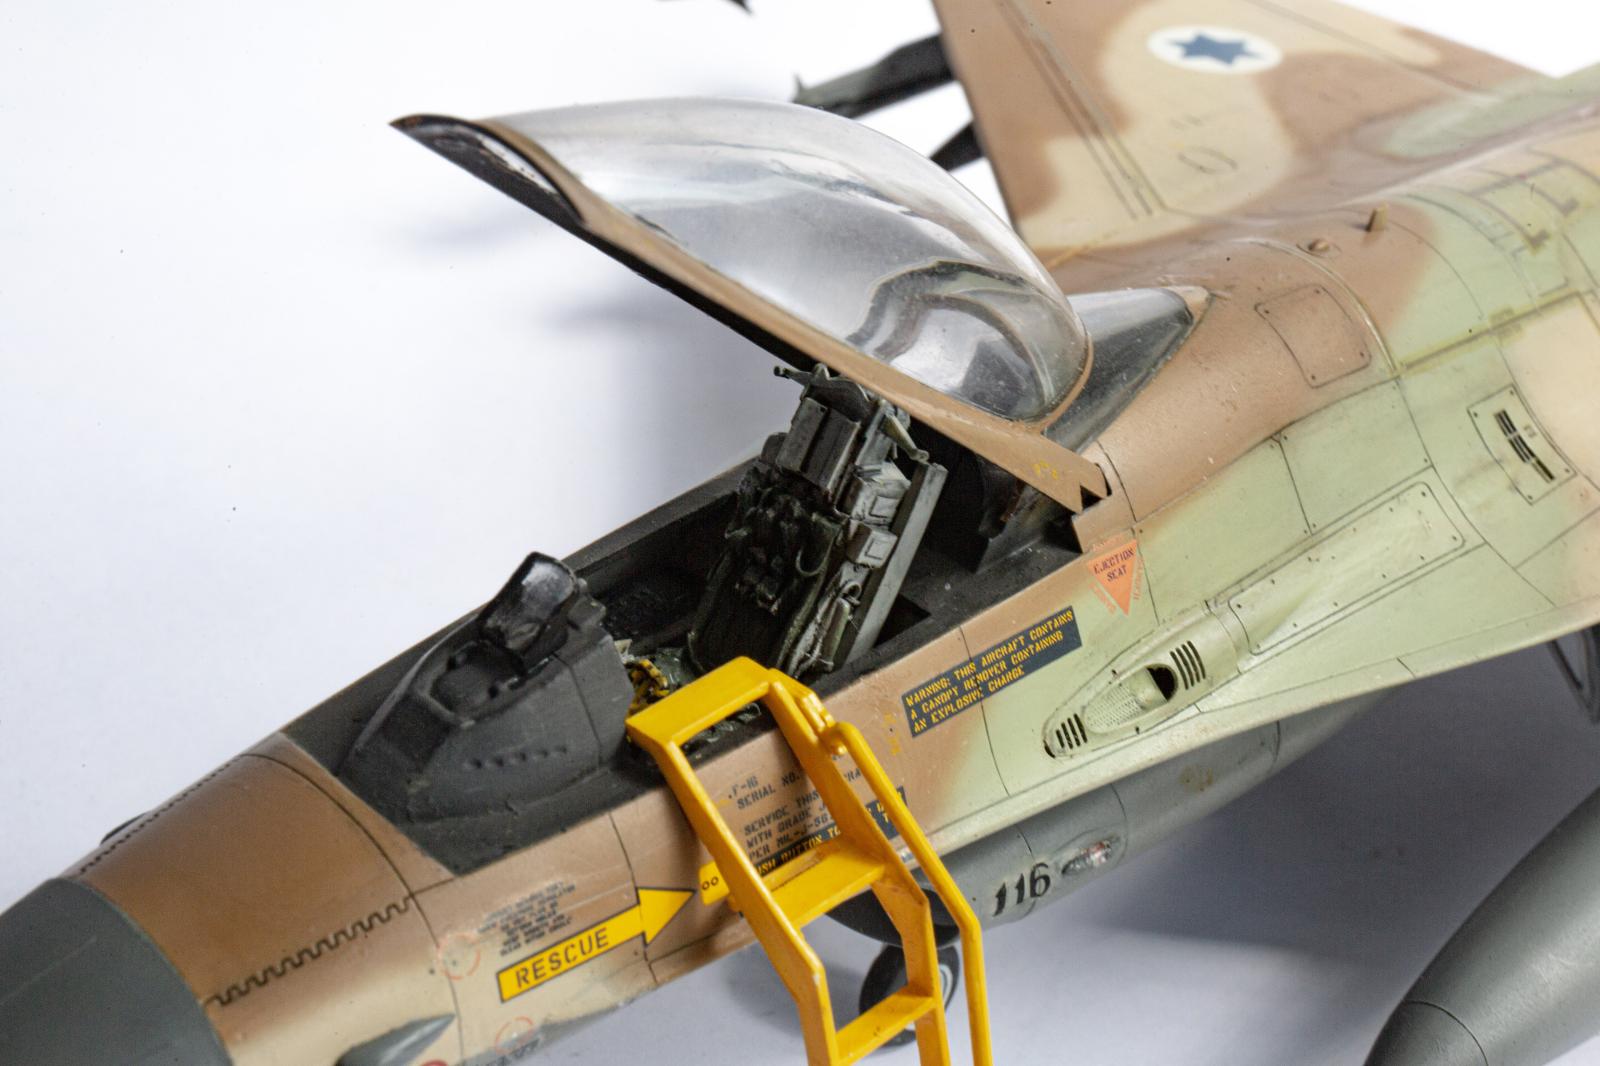 KIT F-16A com cores da FAP - Escala 1:48 - K48100 - Kiosque da